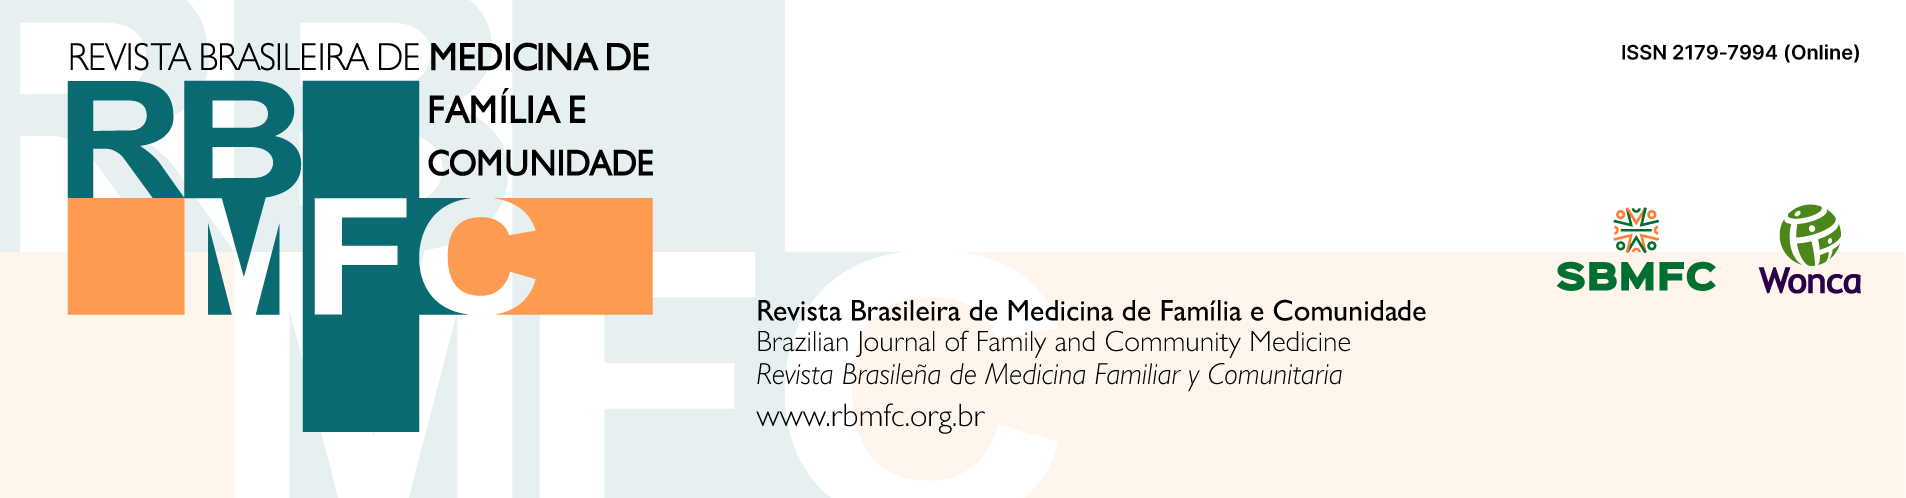 Logo of Revista Brasileira de Medicina de Família e Comunidade